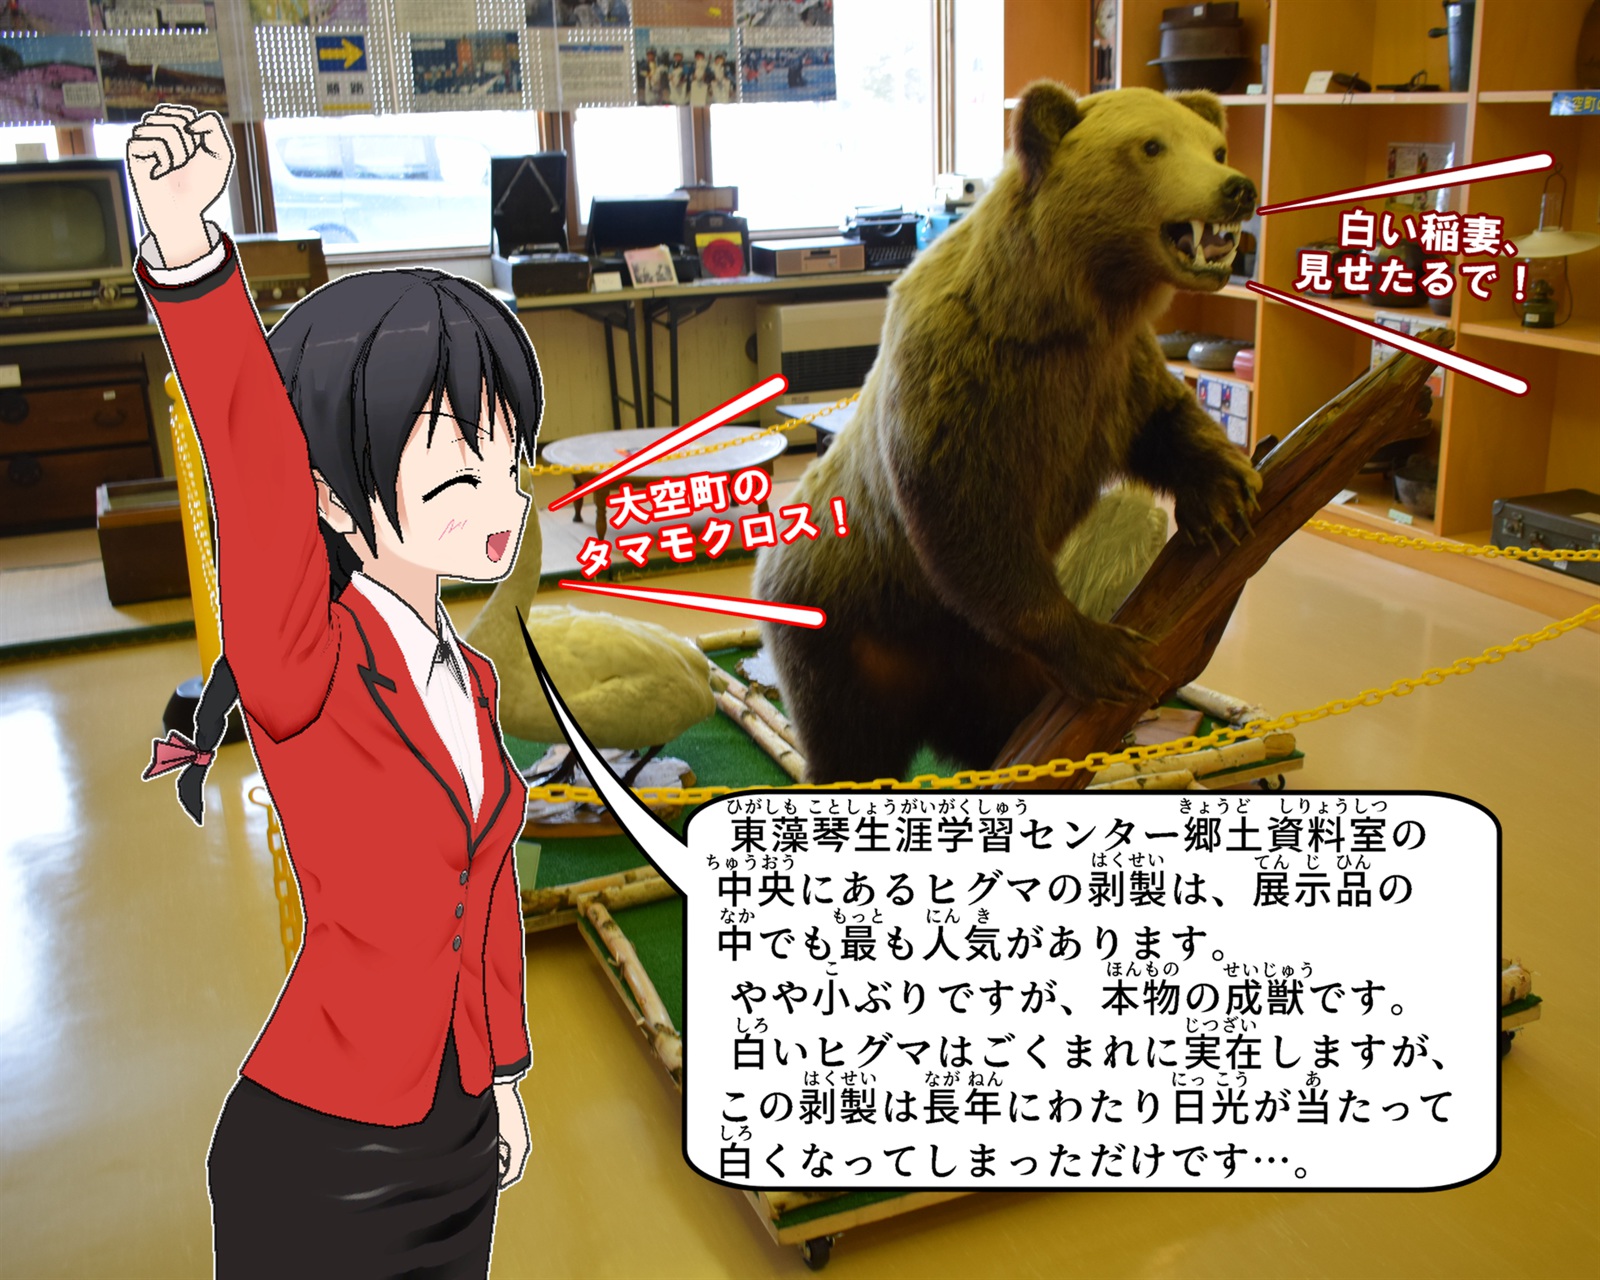 東藻琴生涯学習センター郷土資料室で展示している熊の剥製について説明をしているイラスト